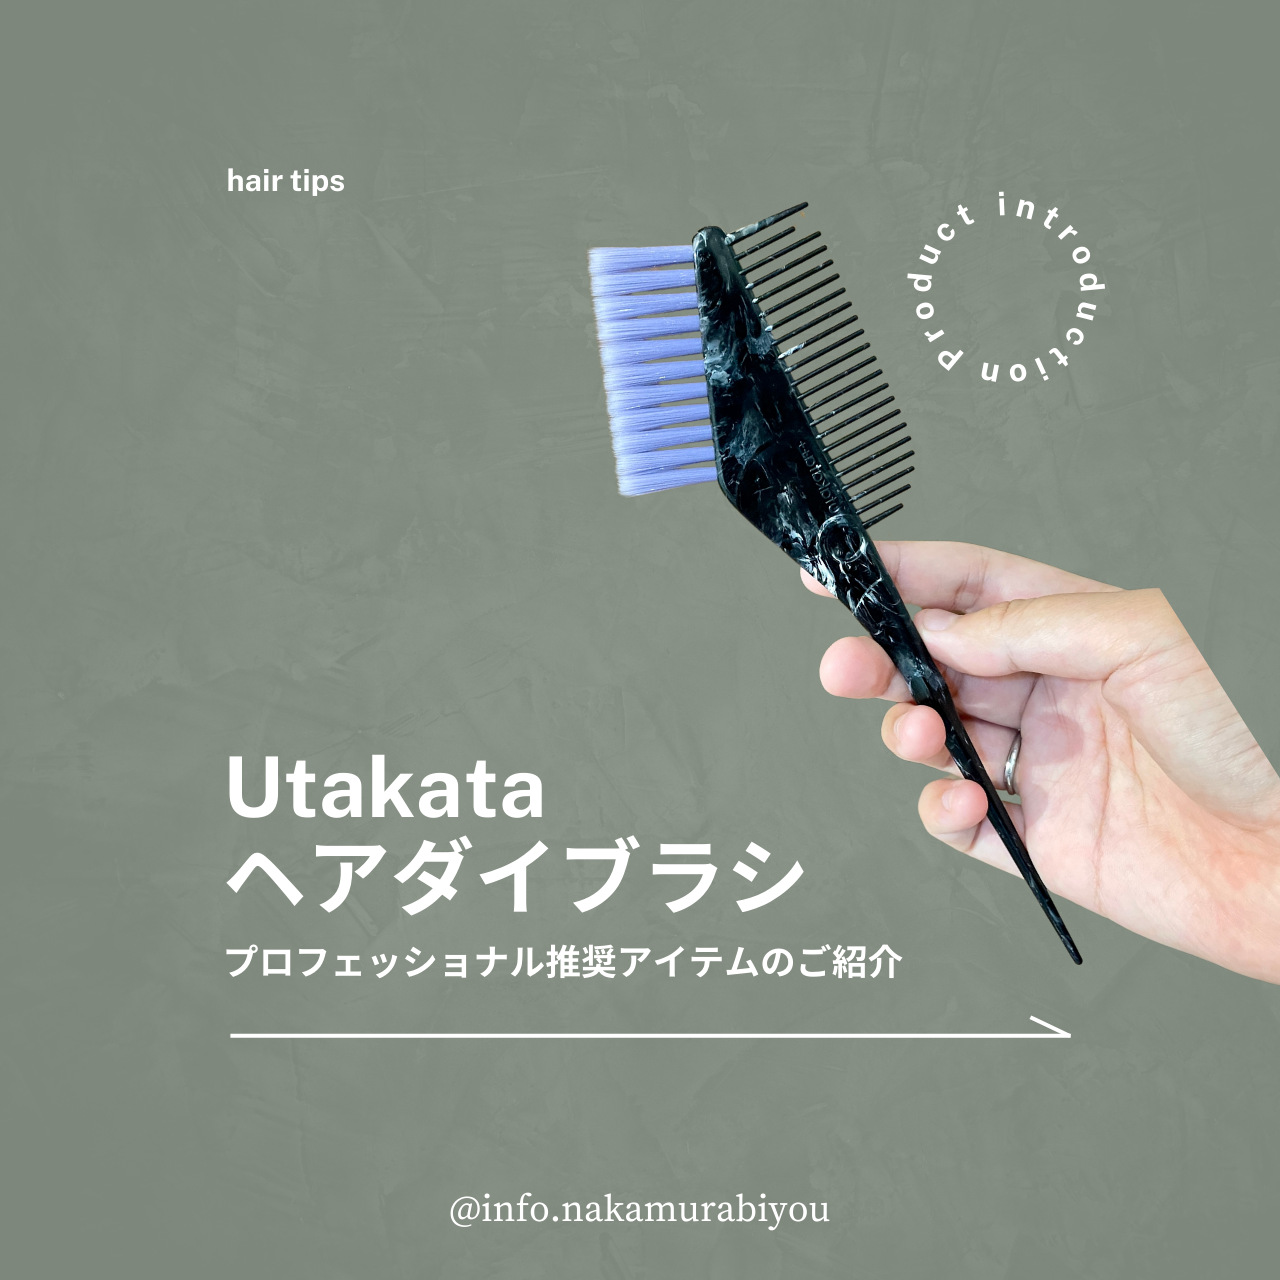 【プロフェッショナル推奨ツール】プロフェッショナル推奨アイテム utakataヘアダイブラシのご案内